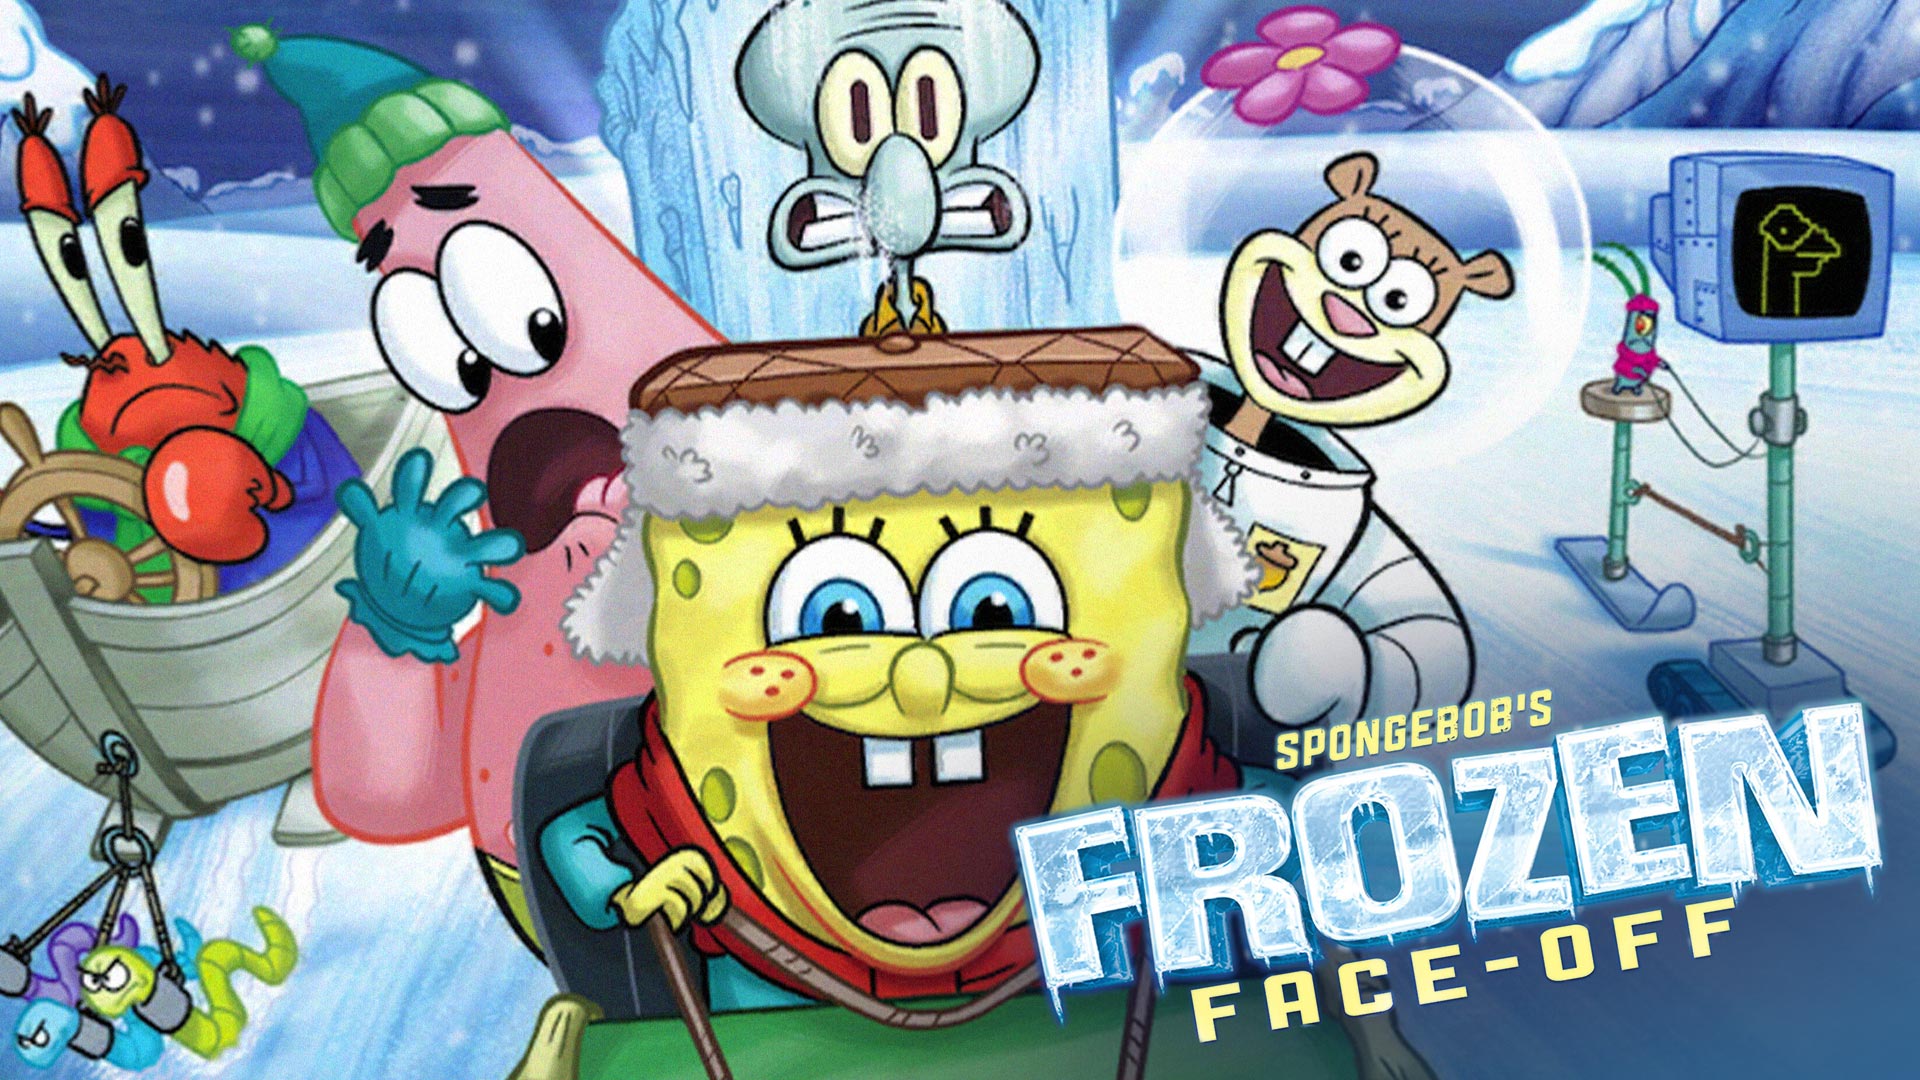 Spongebob Frozen Face Off Dvd - HD Wallpaper 